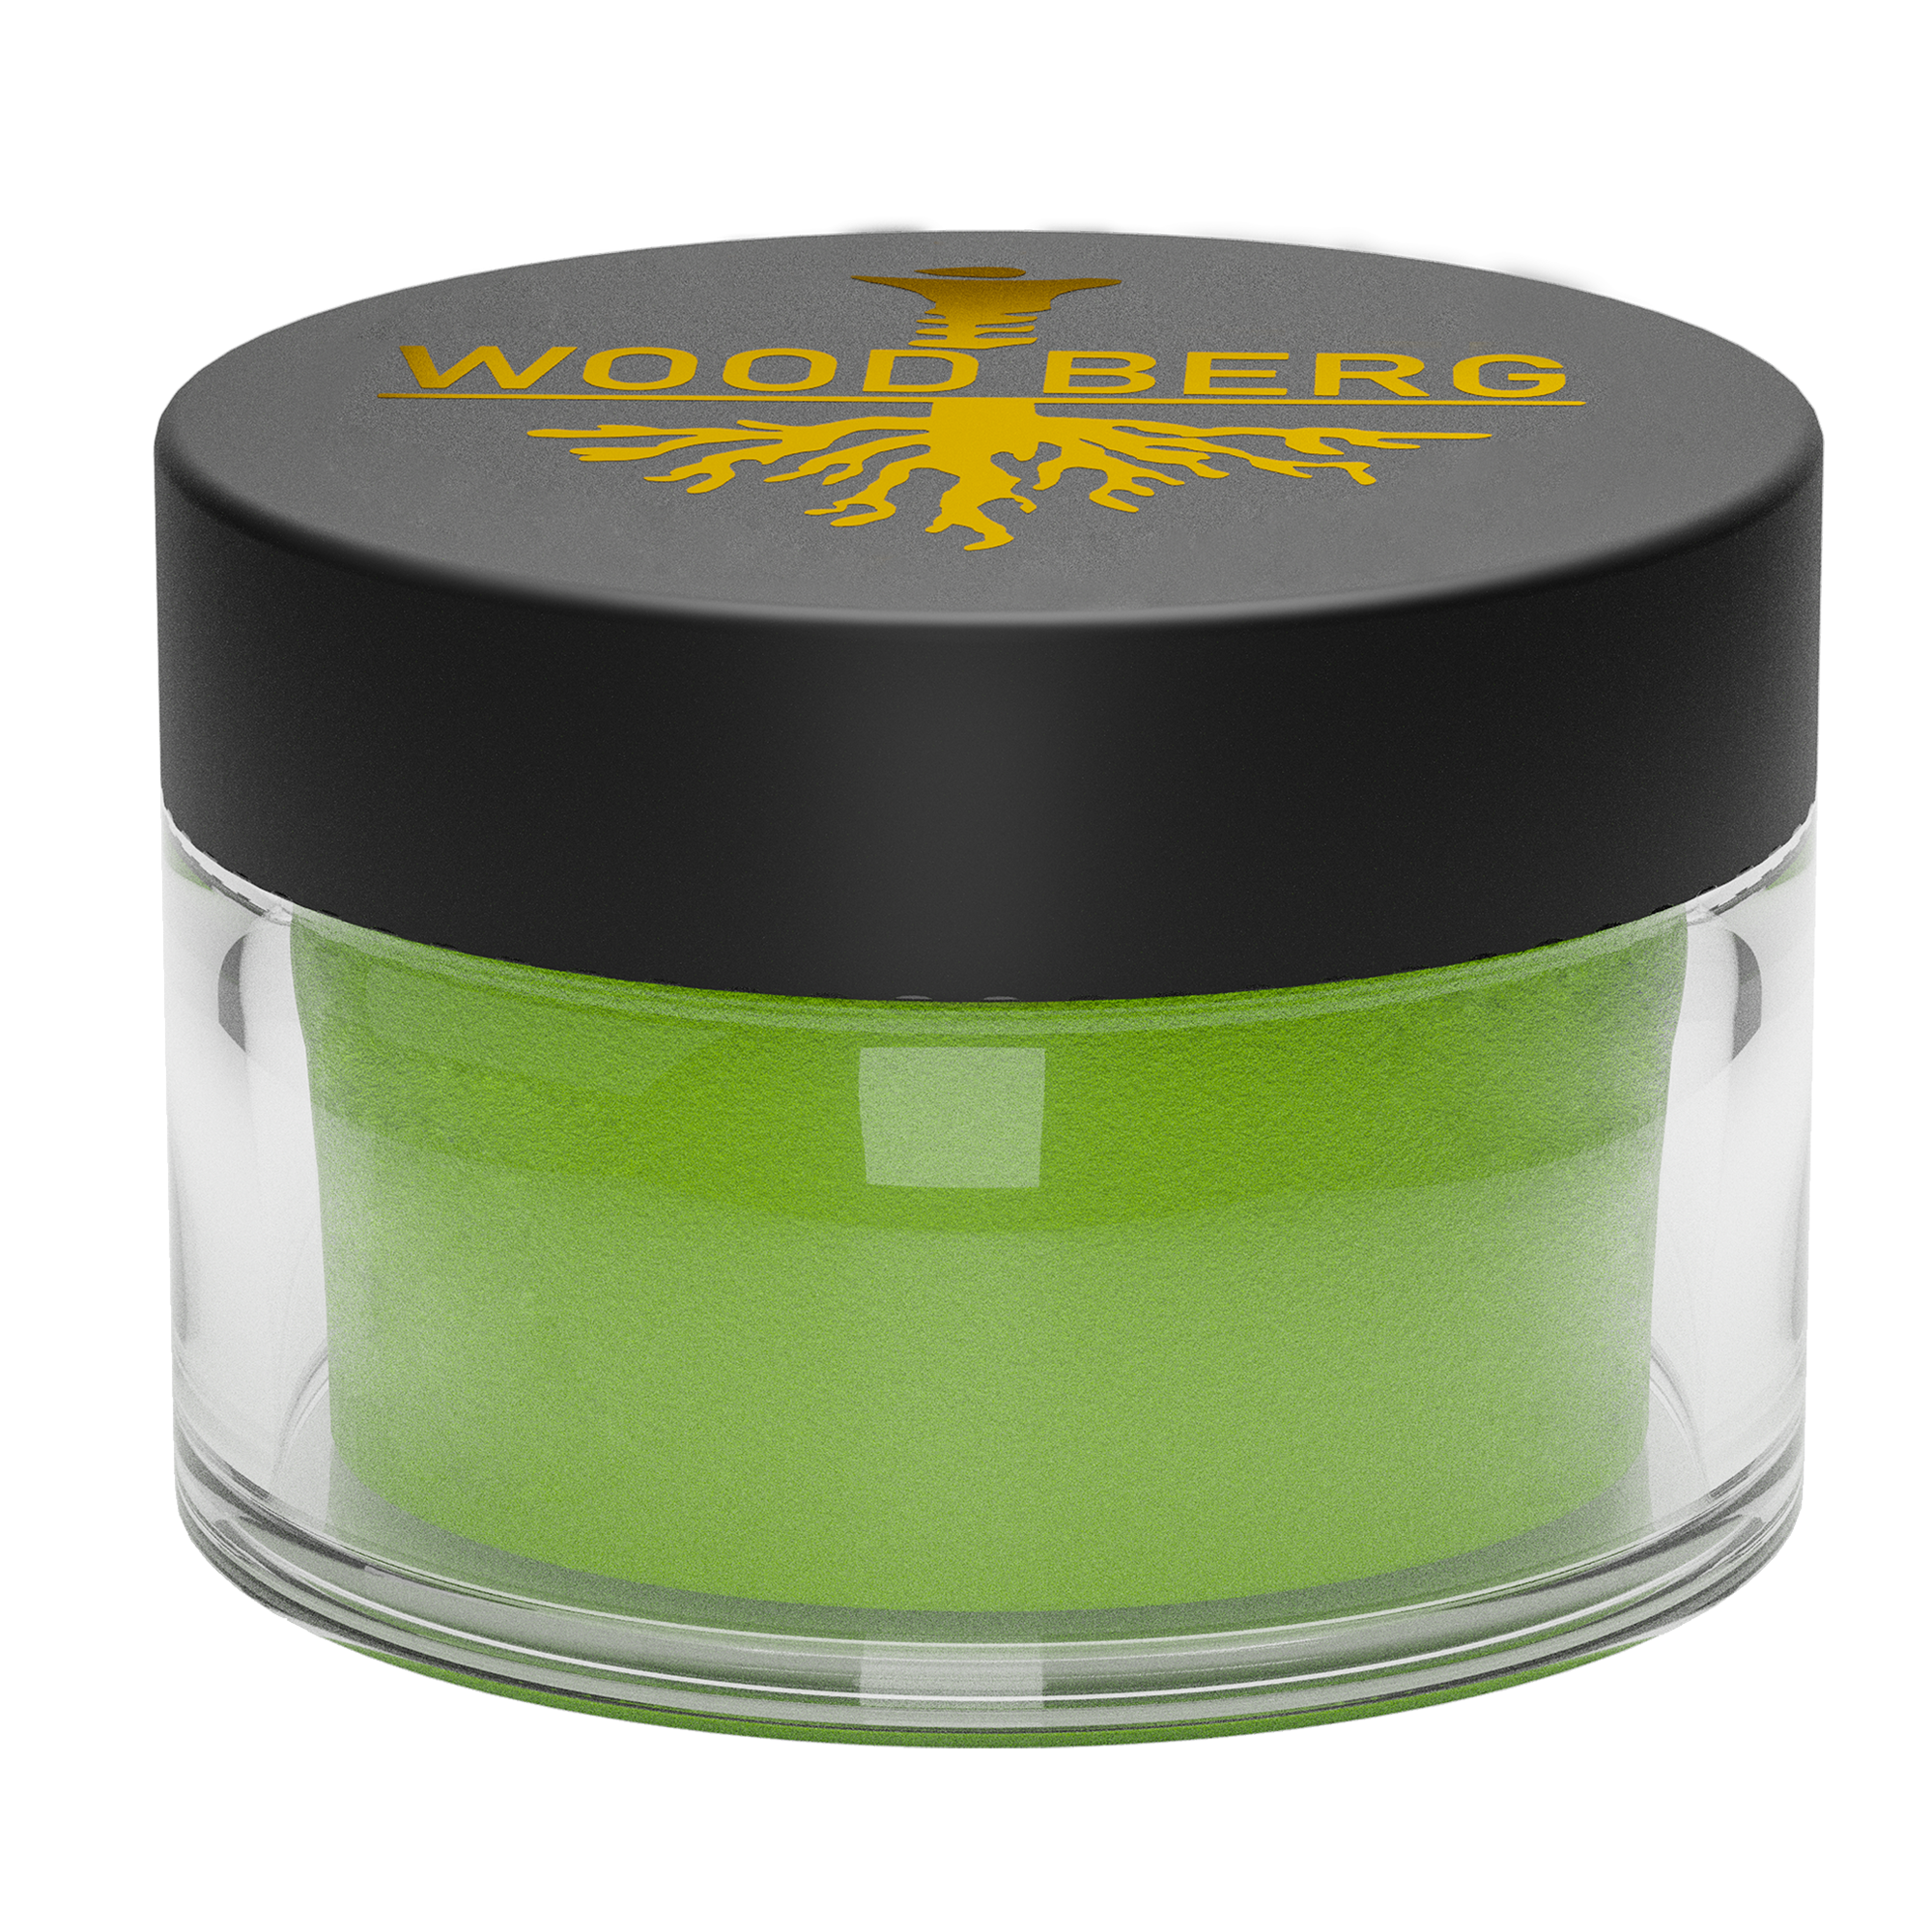 Woodberg - لون مايكا  اخضر ليموني 15 غرام 